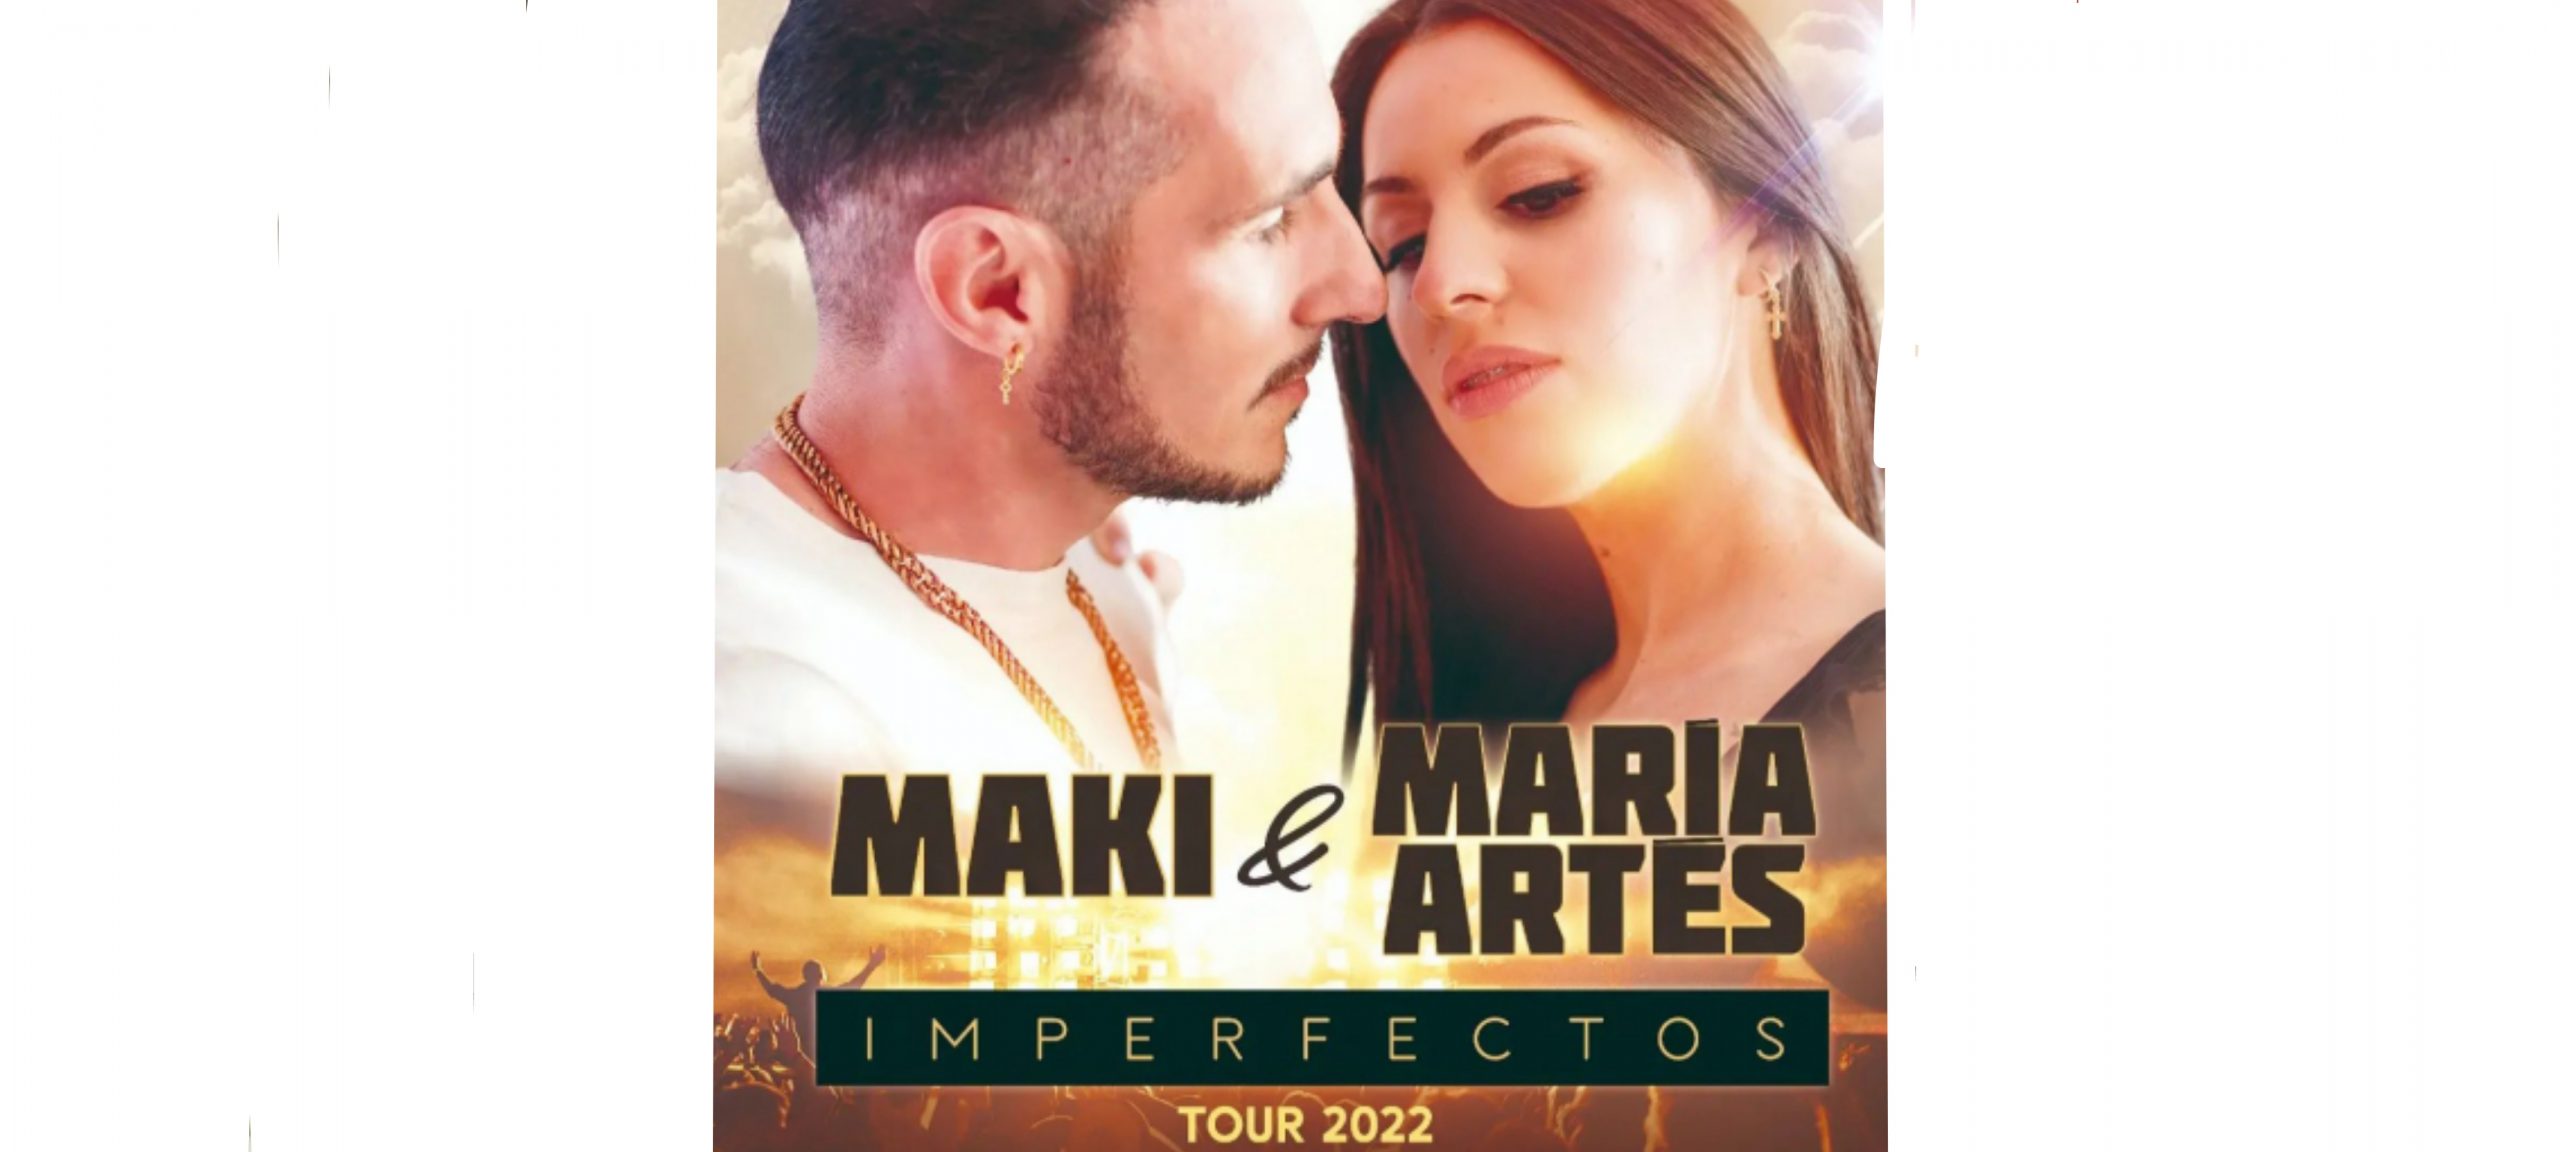 El Ayuntamiento pone dos fechas del concierto del 'Maki & Maria Artes' tras la polémica